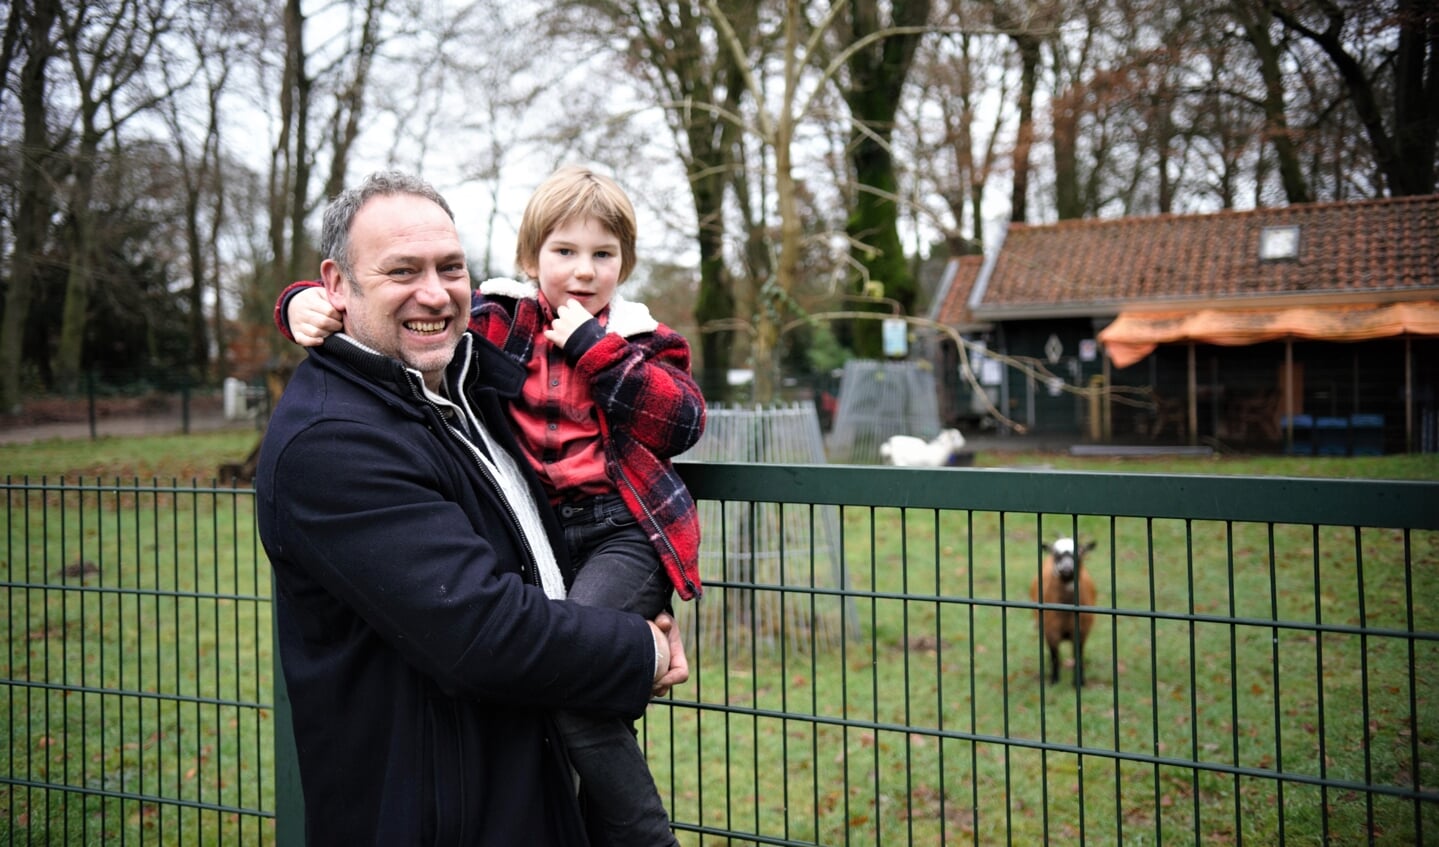 Velthuizen met zijn zoon Rens, heeft al een mooi gedoneerd bedrag ontvangen om de kinderboerderij in Heelsum open te houden.